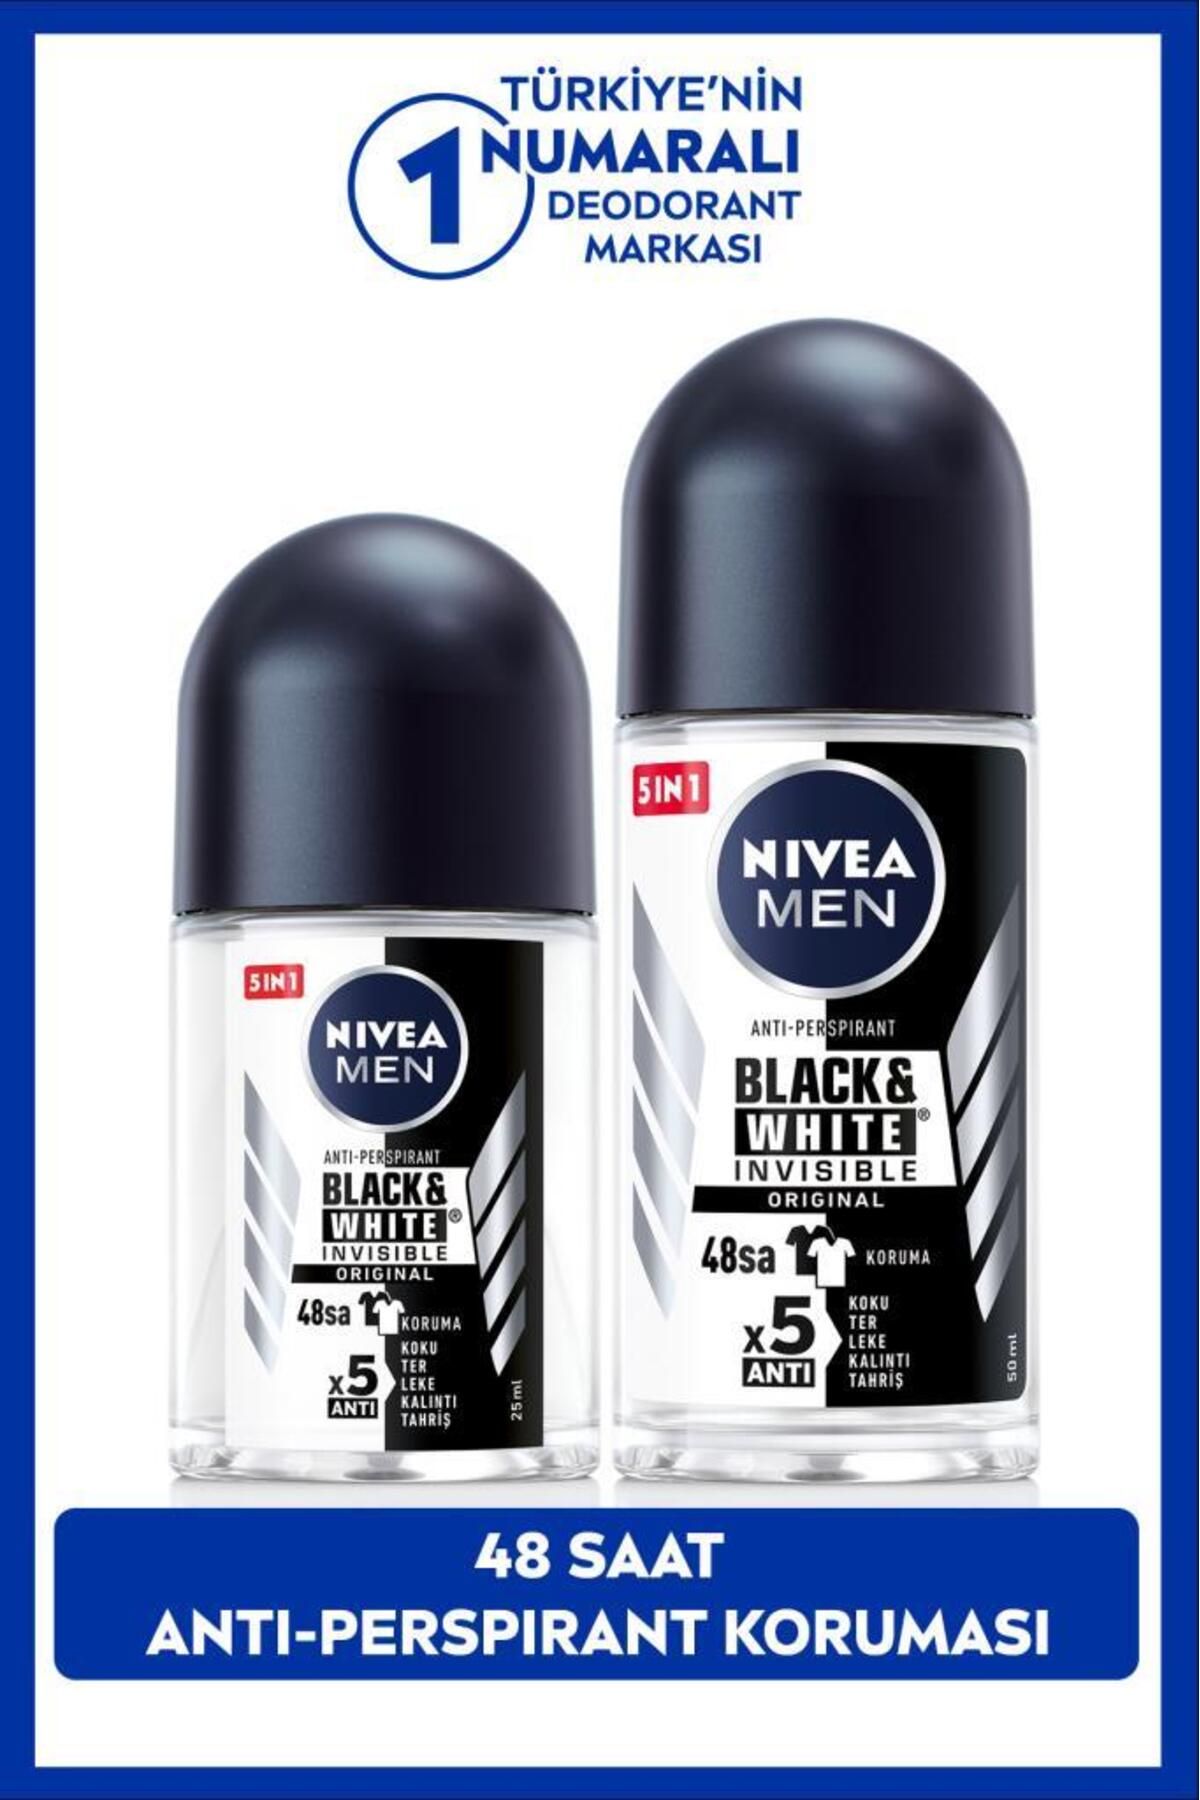 NIVEA Men Erkek Roll-on Deodorant Black&white 50ml Ve Mini Roll-on Black&white 25ml